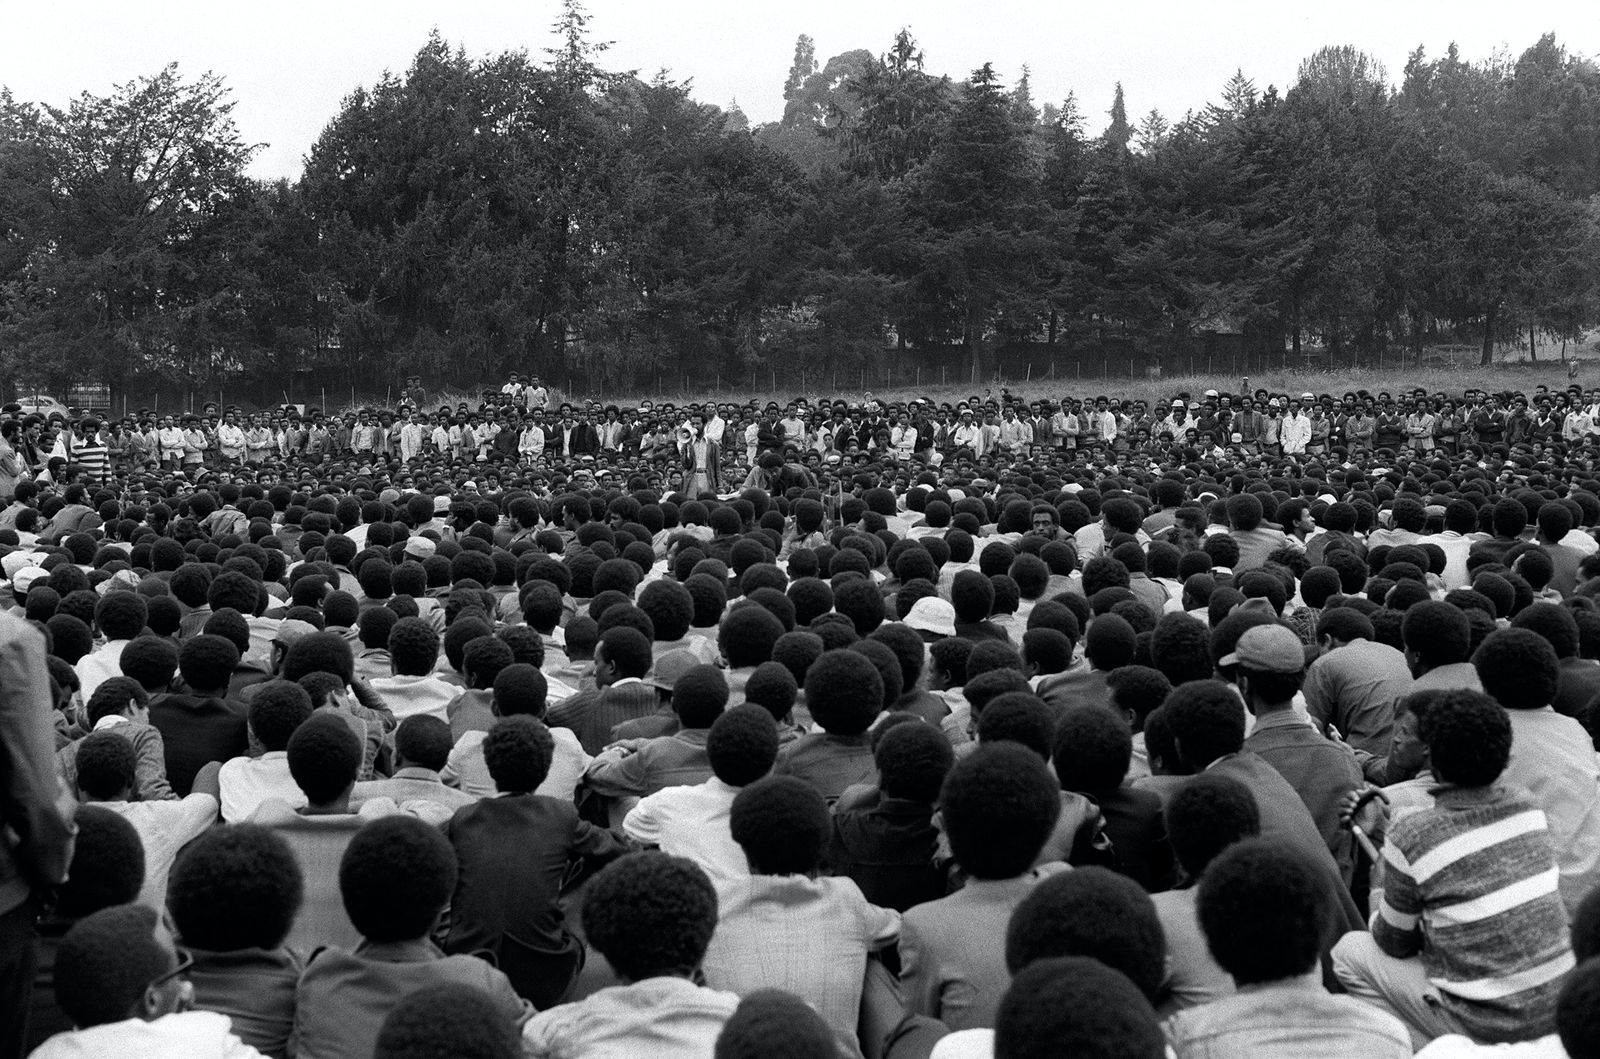 جانب من الاحتجاجات في إثيوبيا للمطالبة بحكم مدني في 26 سبتمبر 1974 - AFP